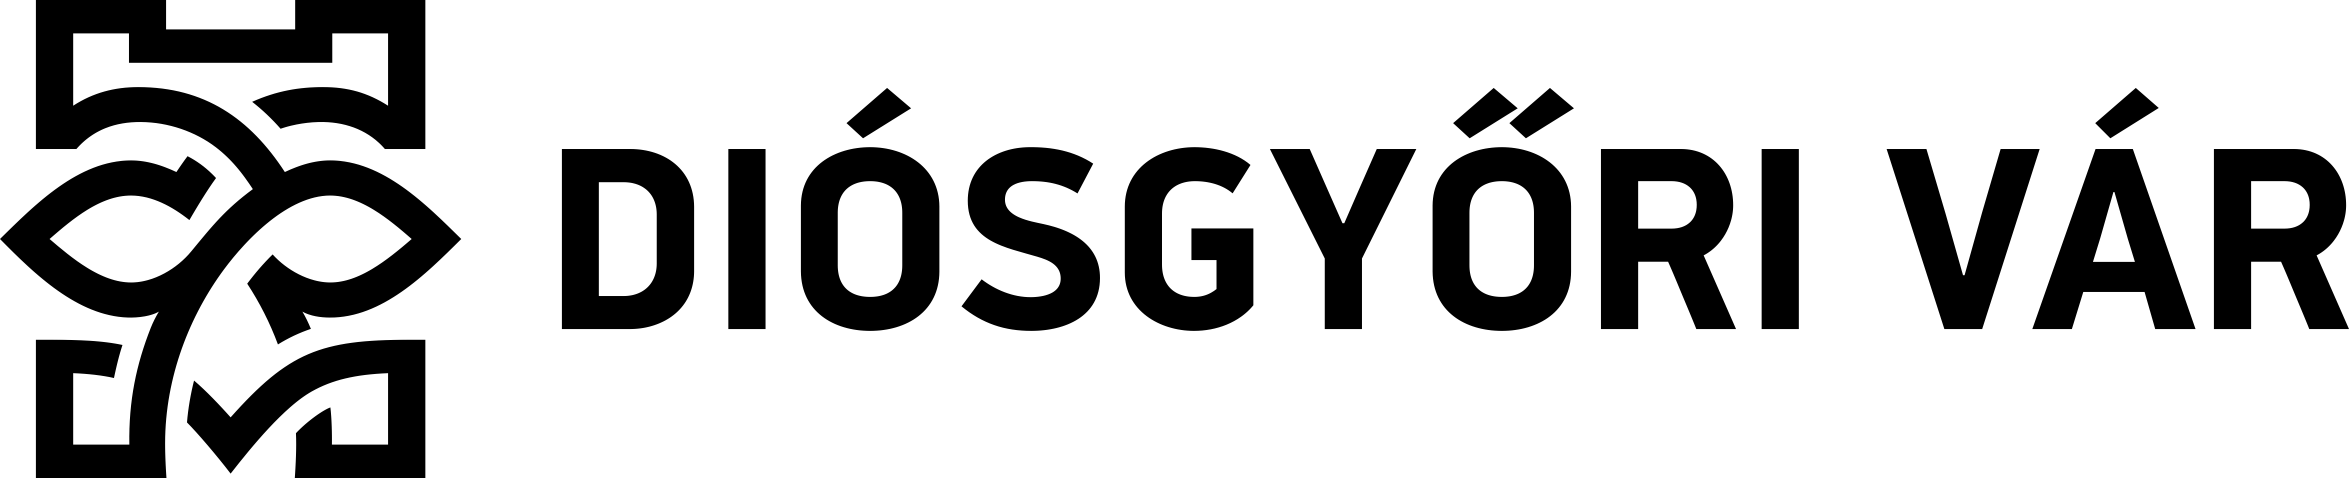 DV HUN logo black 1